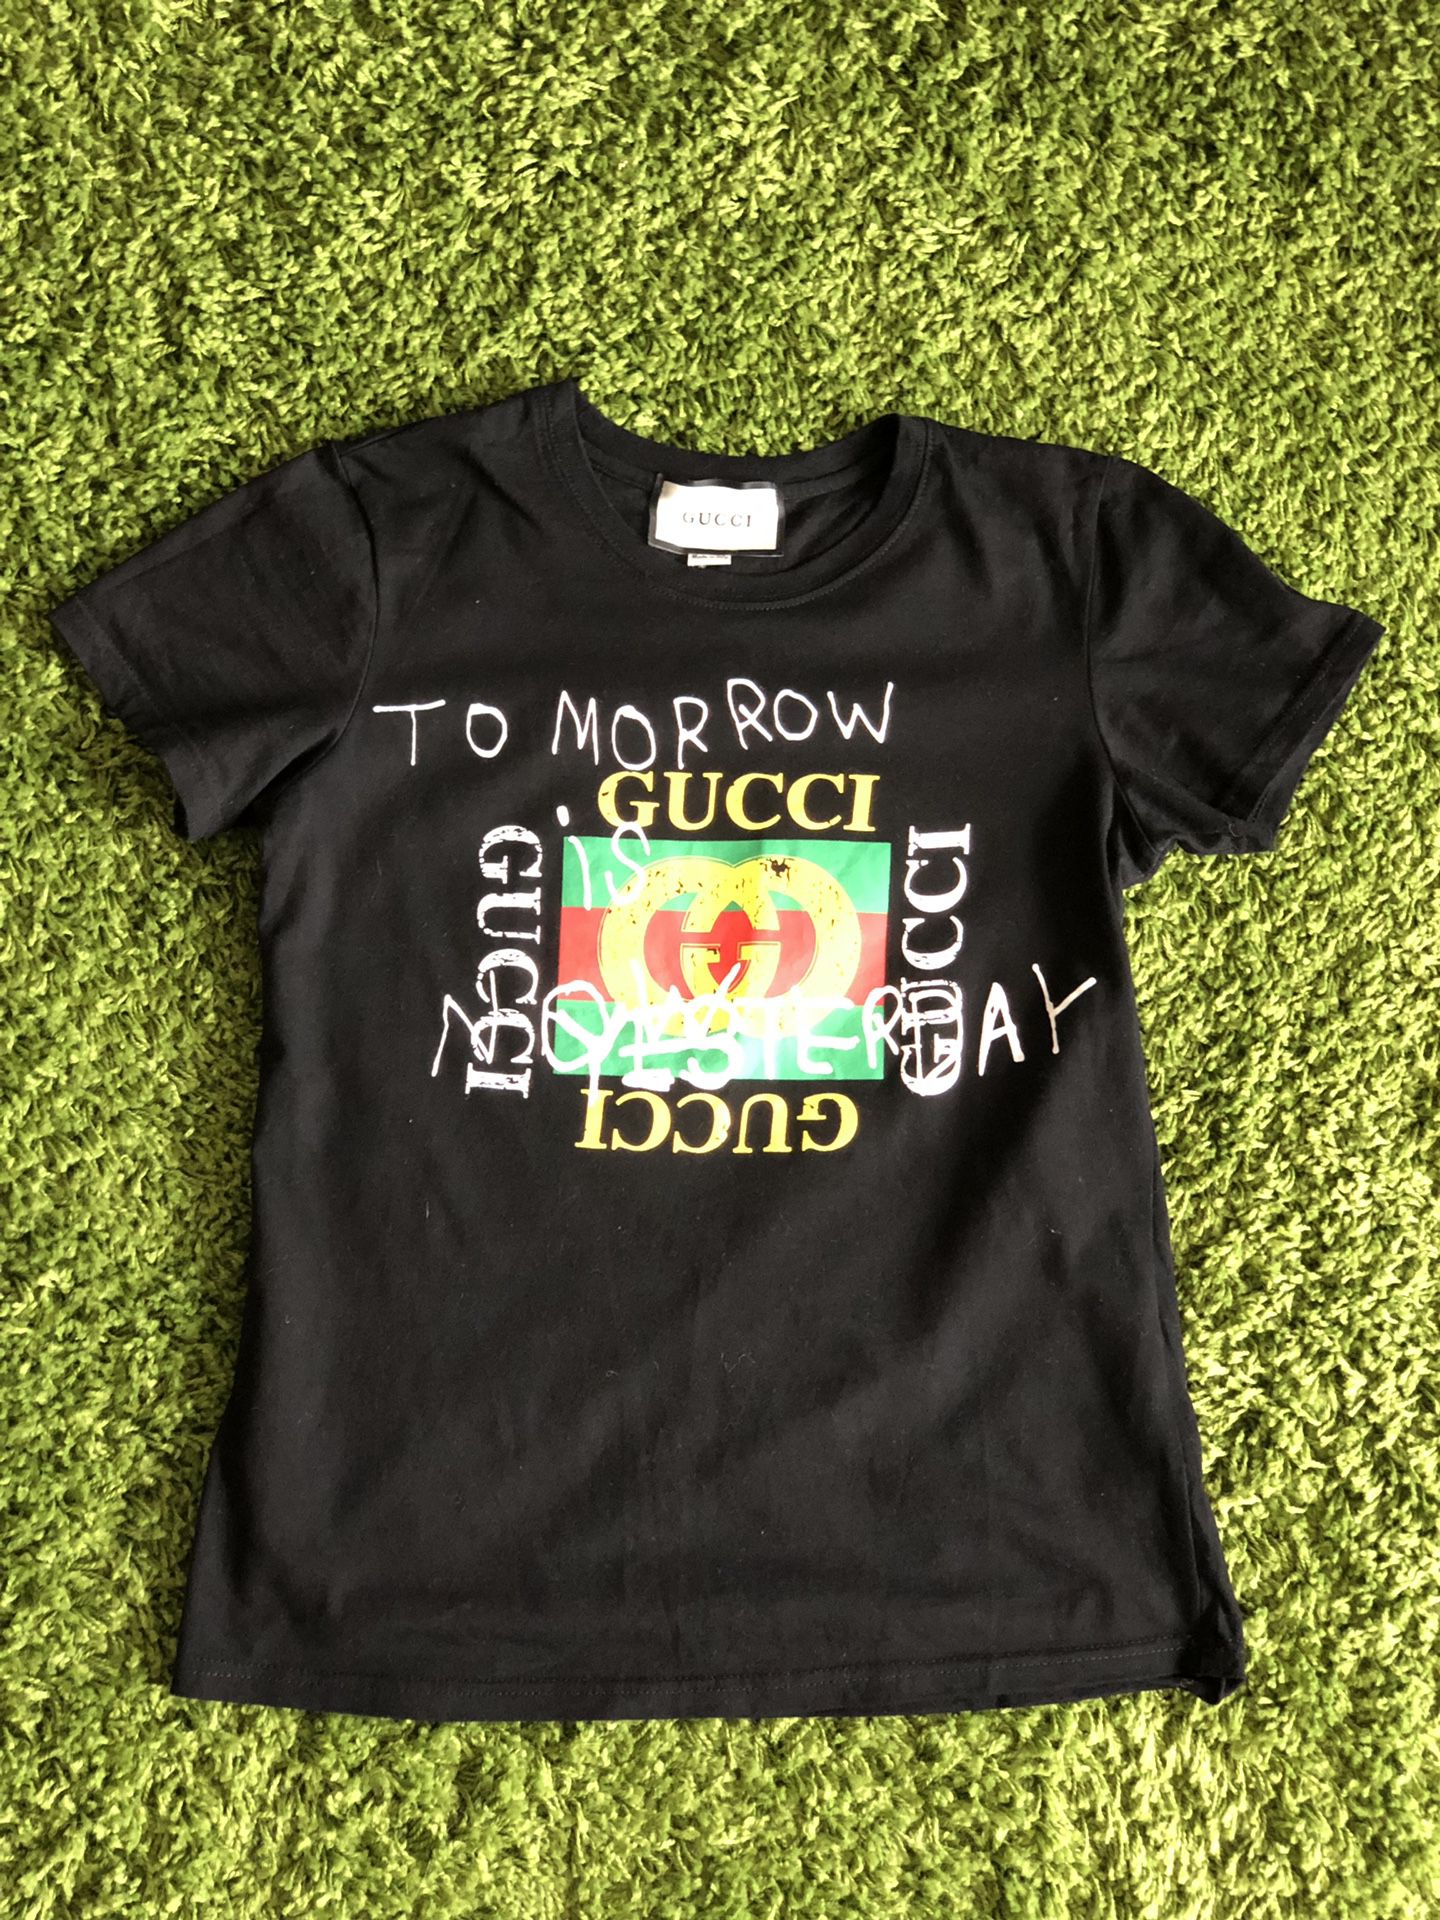 Gucci women’s T-shirt